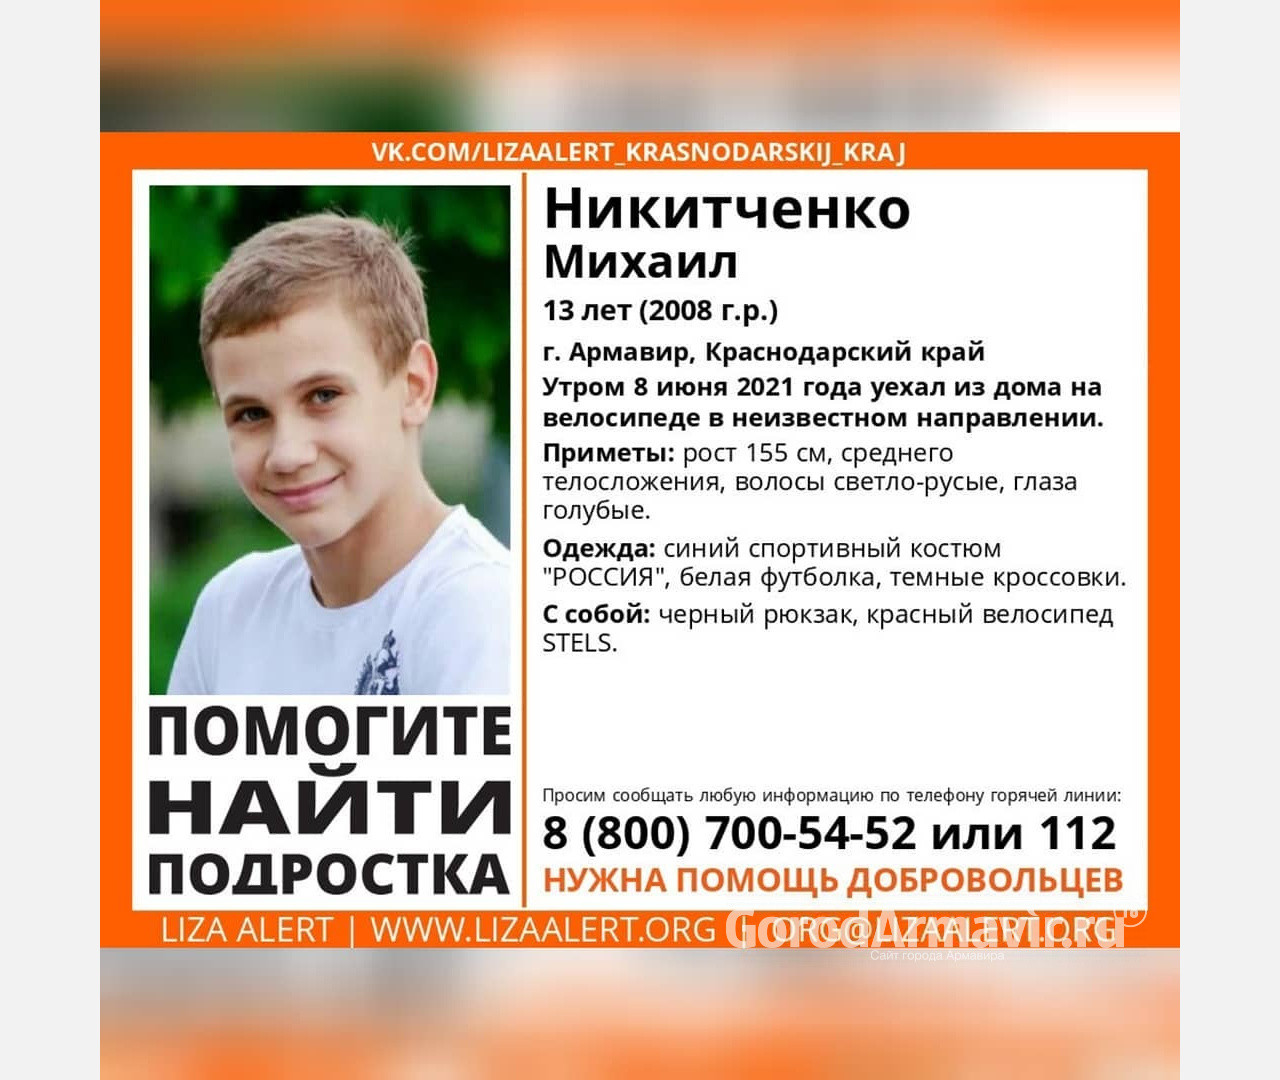 В Армавире исчез 13-летний мальчик Михаил Никитченко